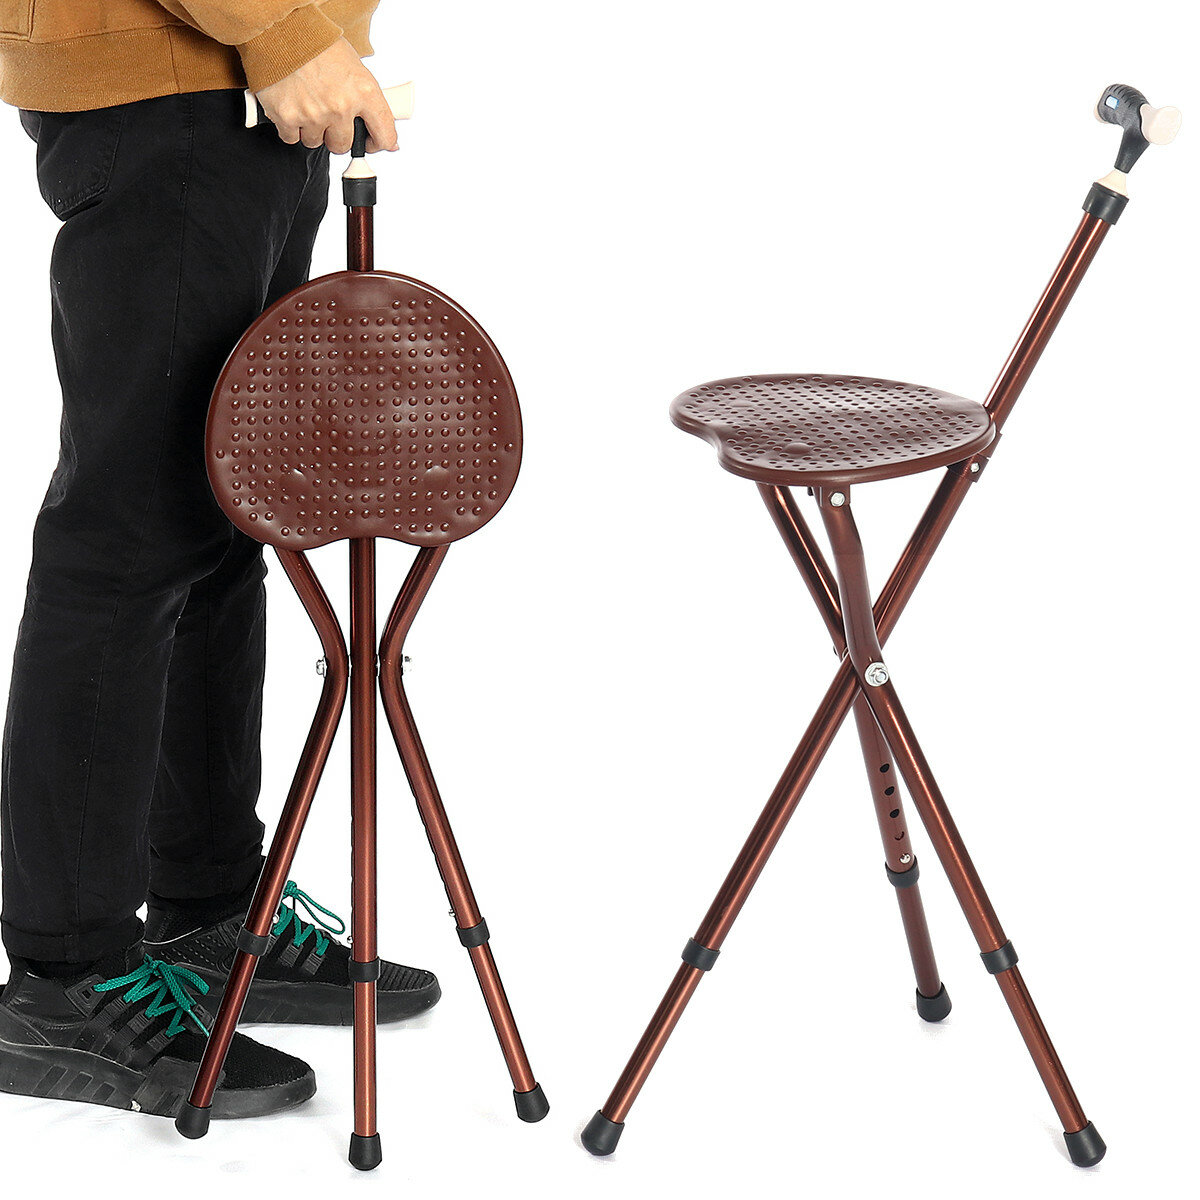 Αναδιπλούμενη καρέκλα με ρυθμιζόμενο ύψος και μπαστούνι με φωτεινό LED, αναδιπλούμενη καρέκλα για τους ηλικιωμένους.